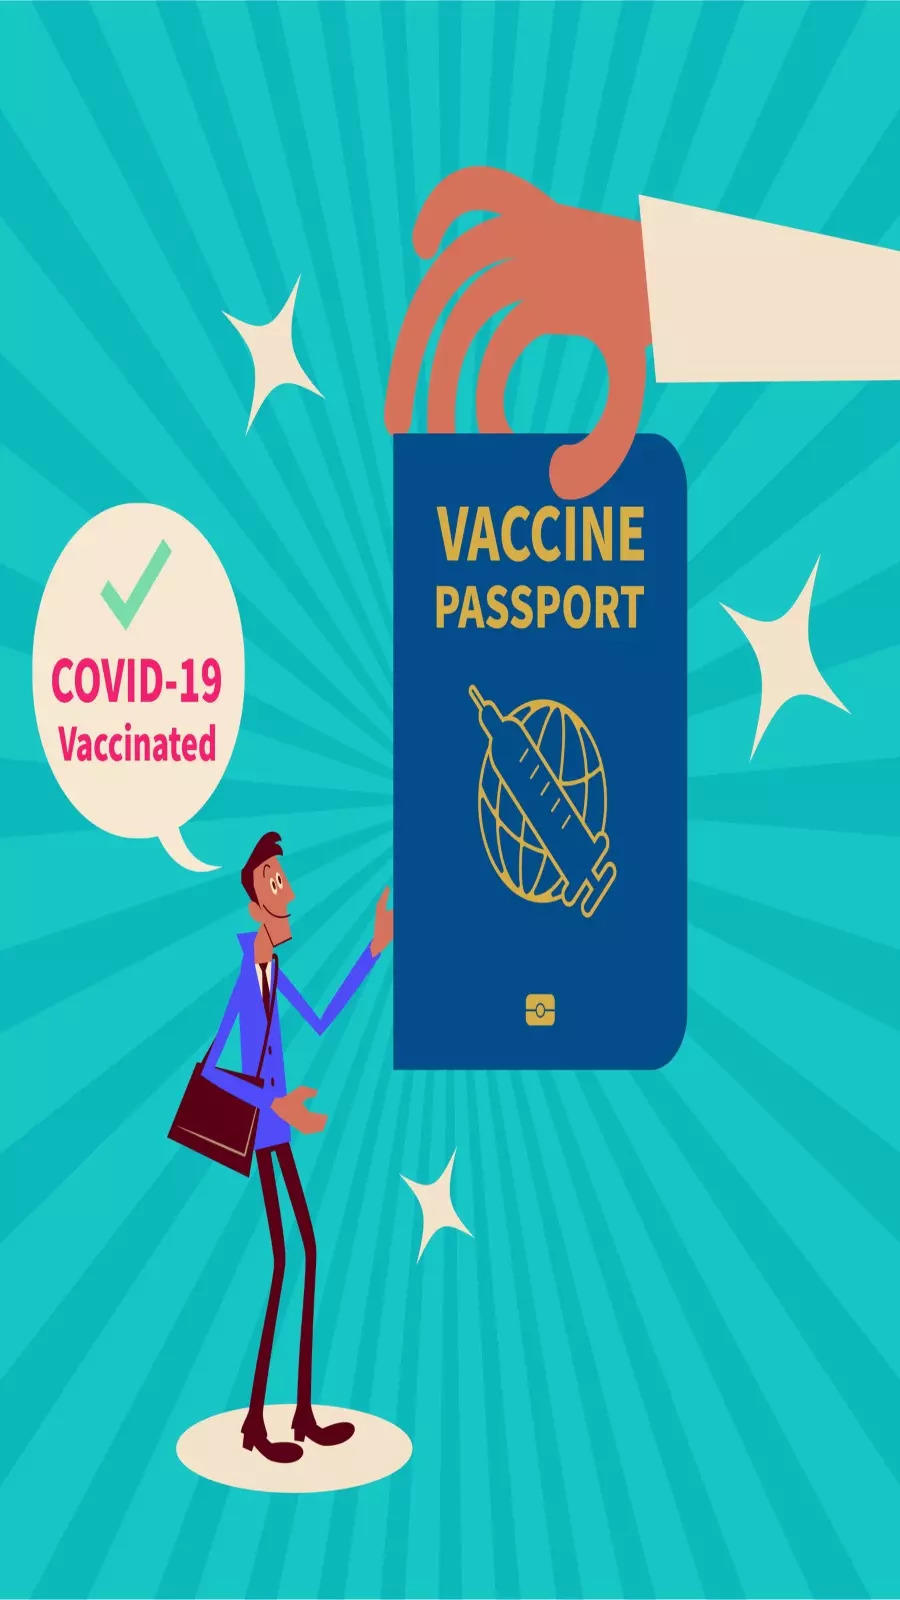 اتحادیه اروپا اعتبار 9 ماهه الزام آور واکسیناسیون را برای کارت مسافرتی COVID-19 تعیین می کند